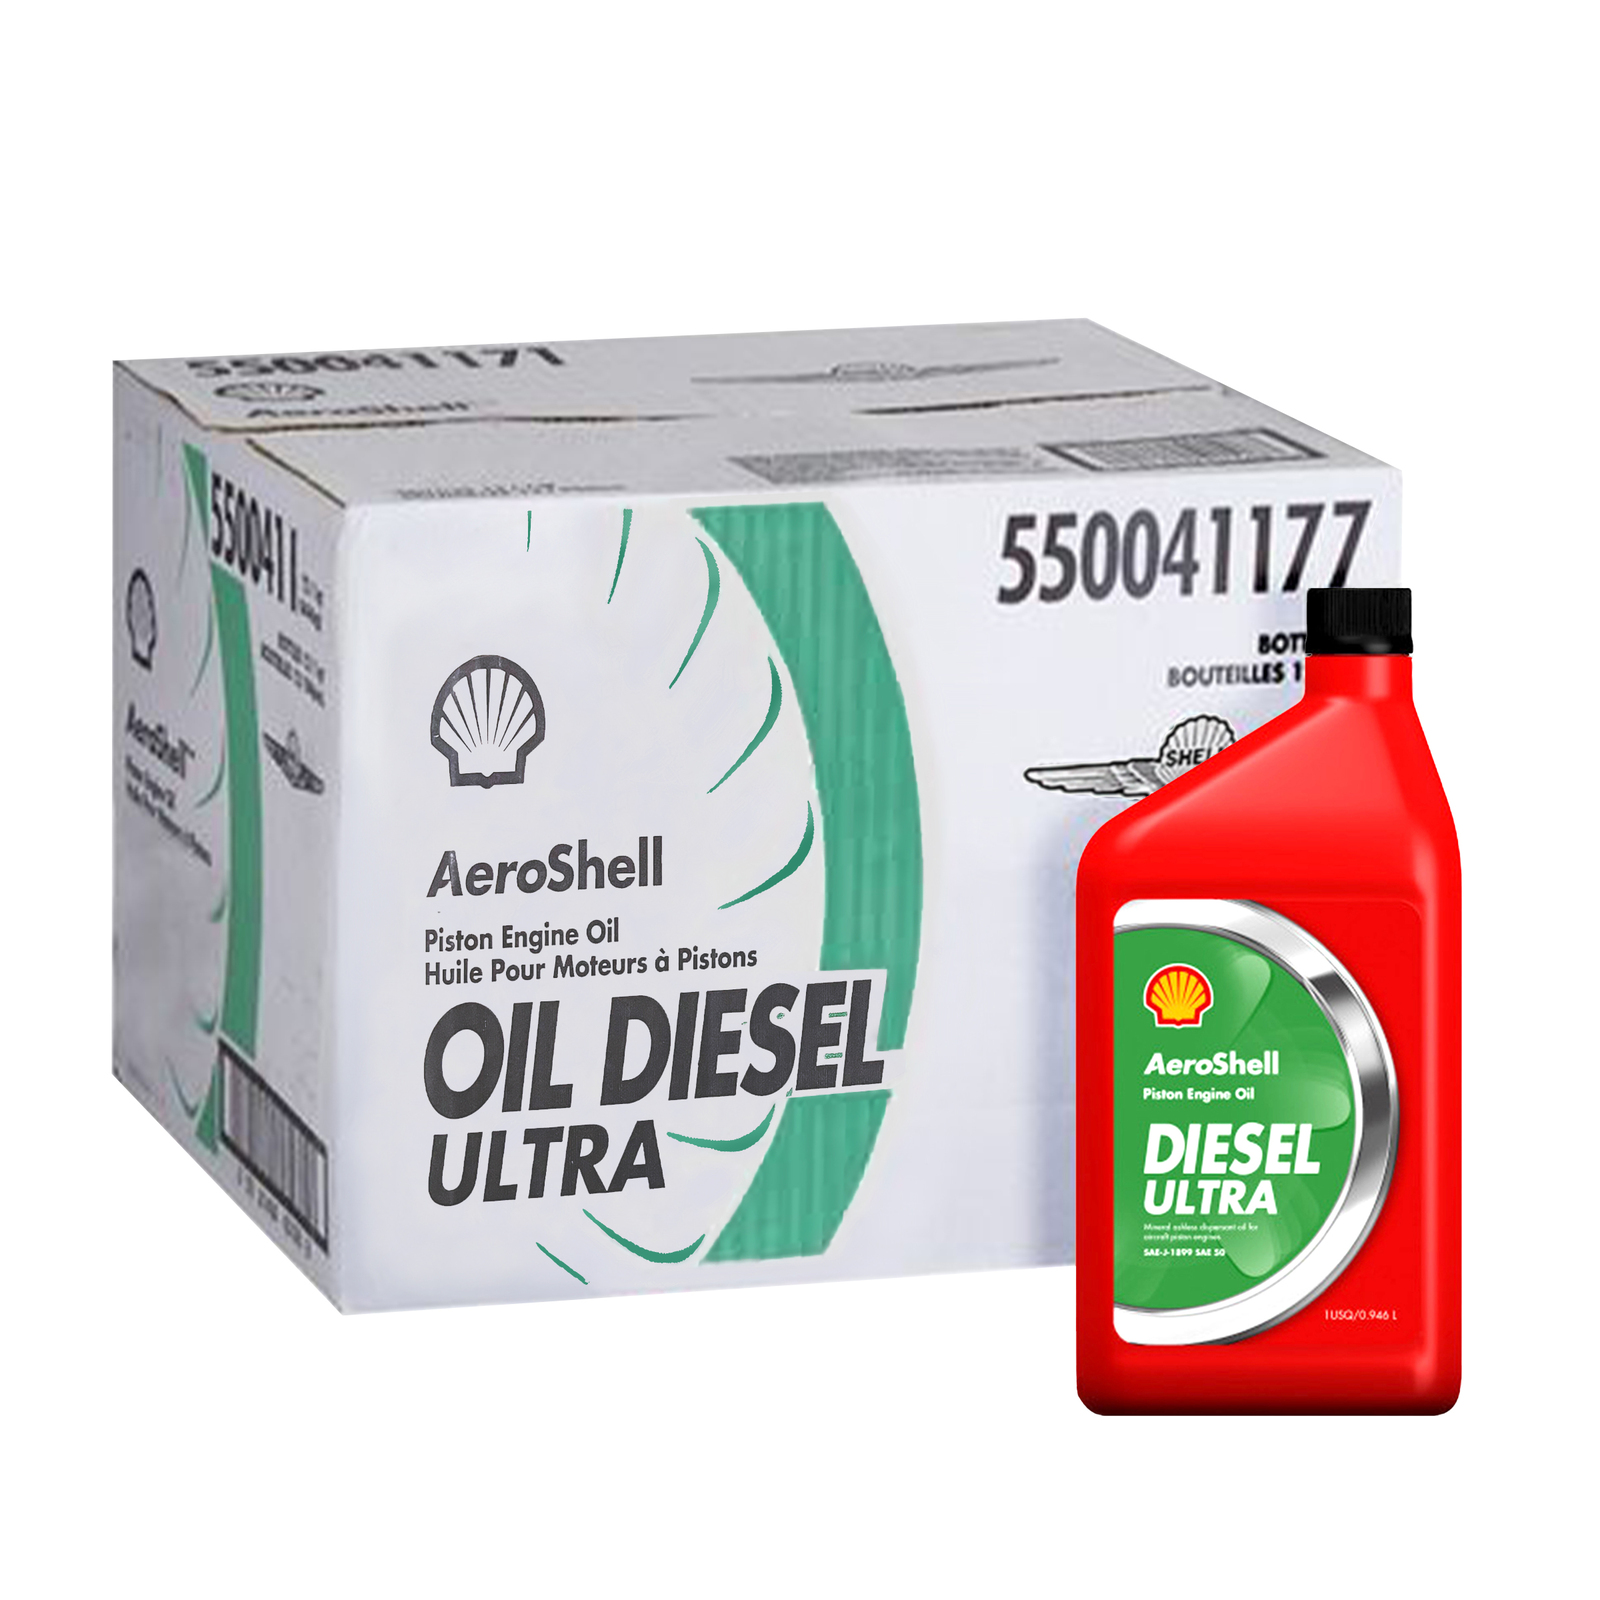 AeroShell Oil Diesel Ultra (12 st)